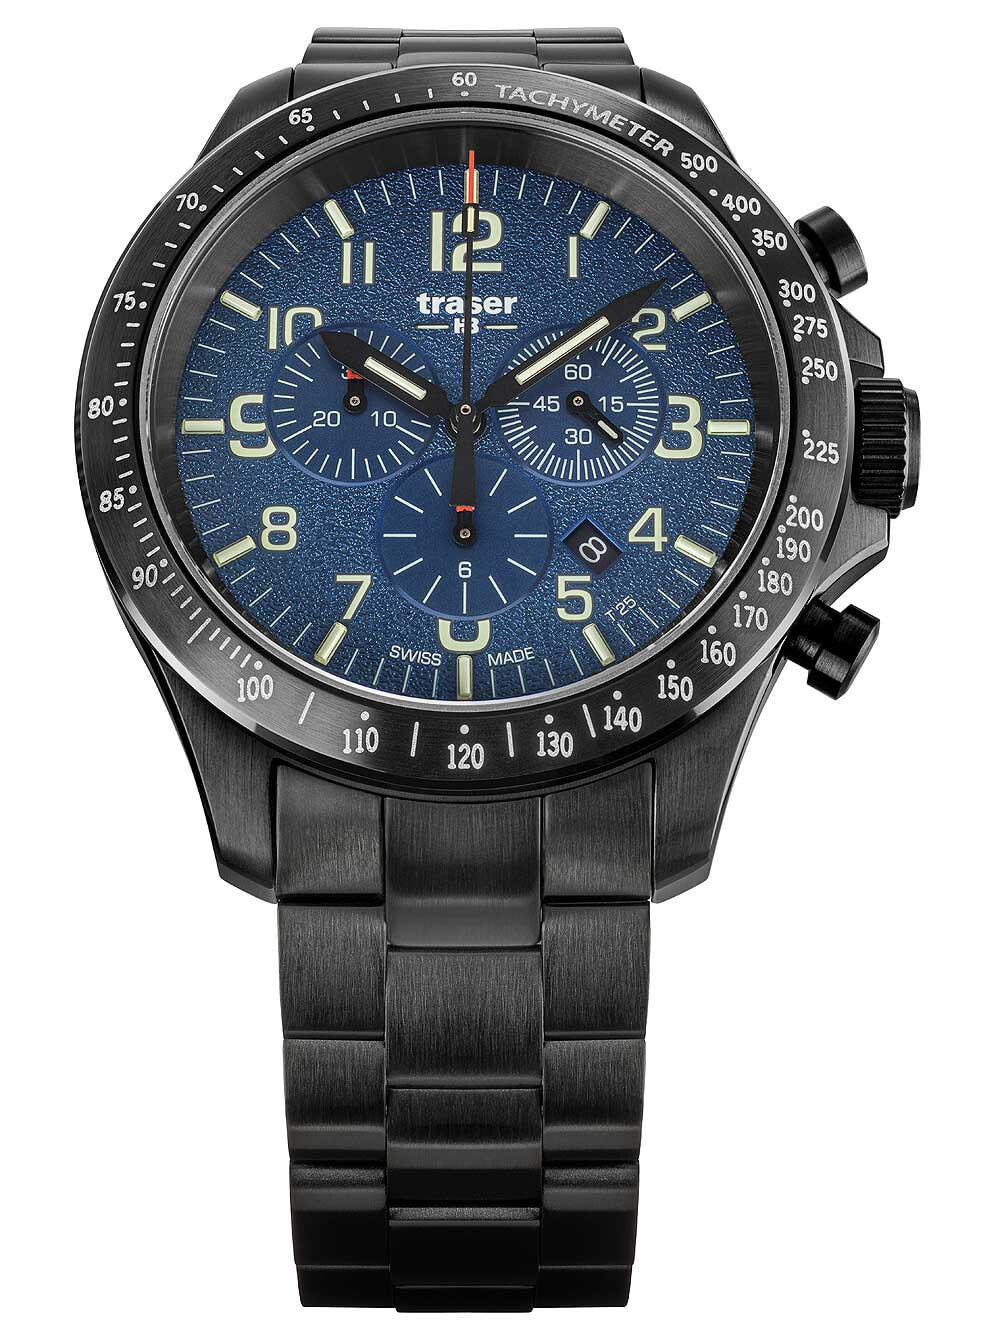 Мужские наручные часы с черным браслетом Traser H3 109462 P67 Officer chrono blue steel 46mm 10ATM